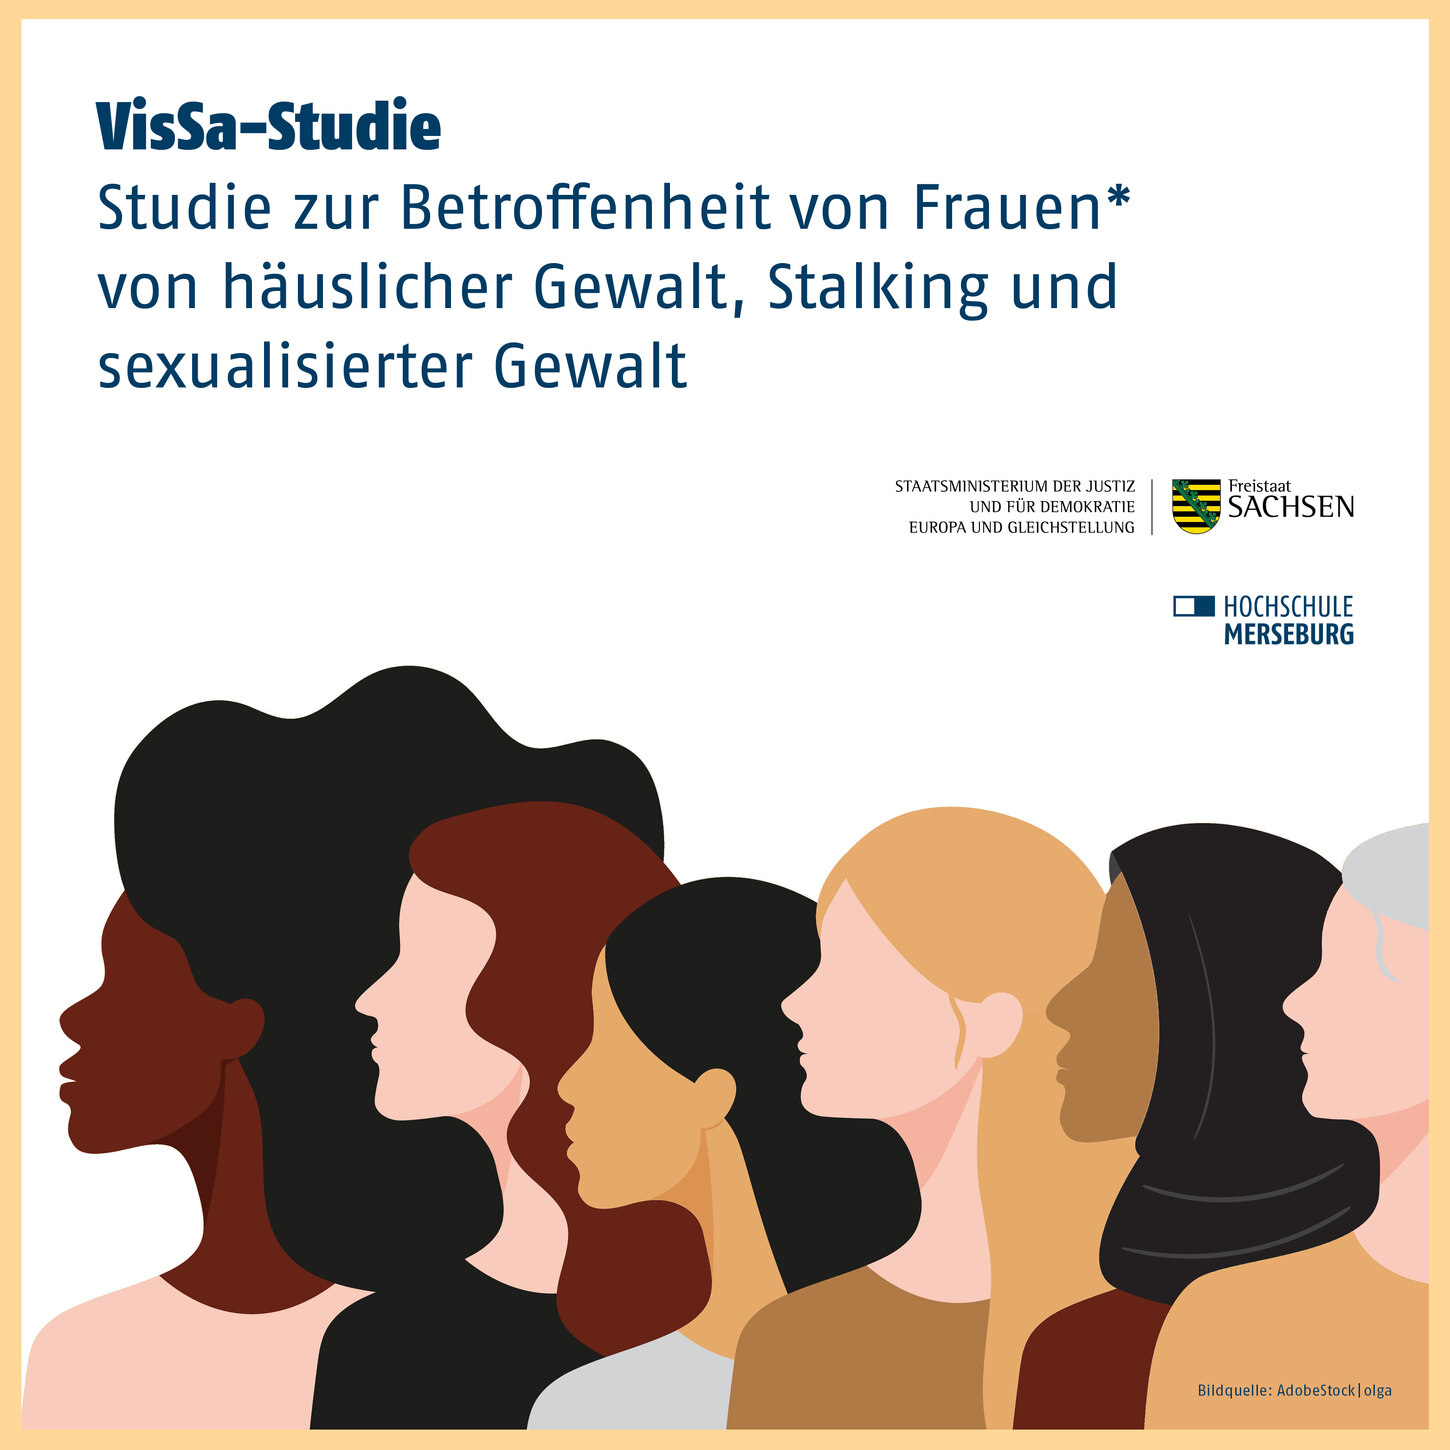 6 Frauen schauen in die selbe Richtung. Im Hintergrund steht "VisSa-Studie. Studie zur Betroffenheit von Frauen* von häuslicher Gewalt, Stalking und sexualisierter Gewalt